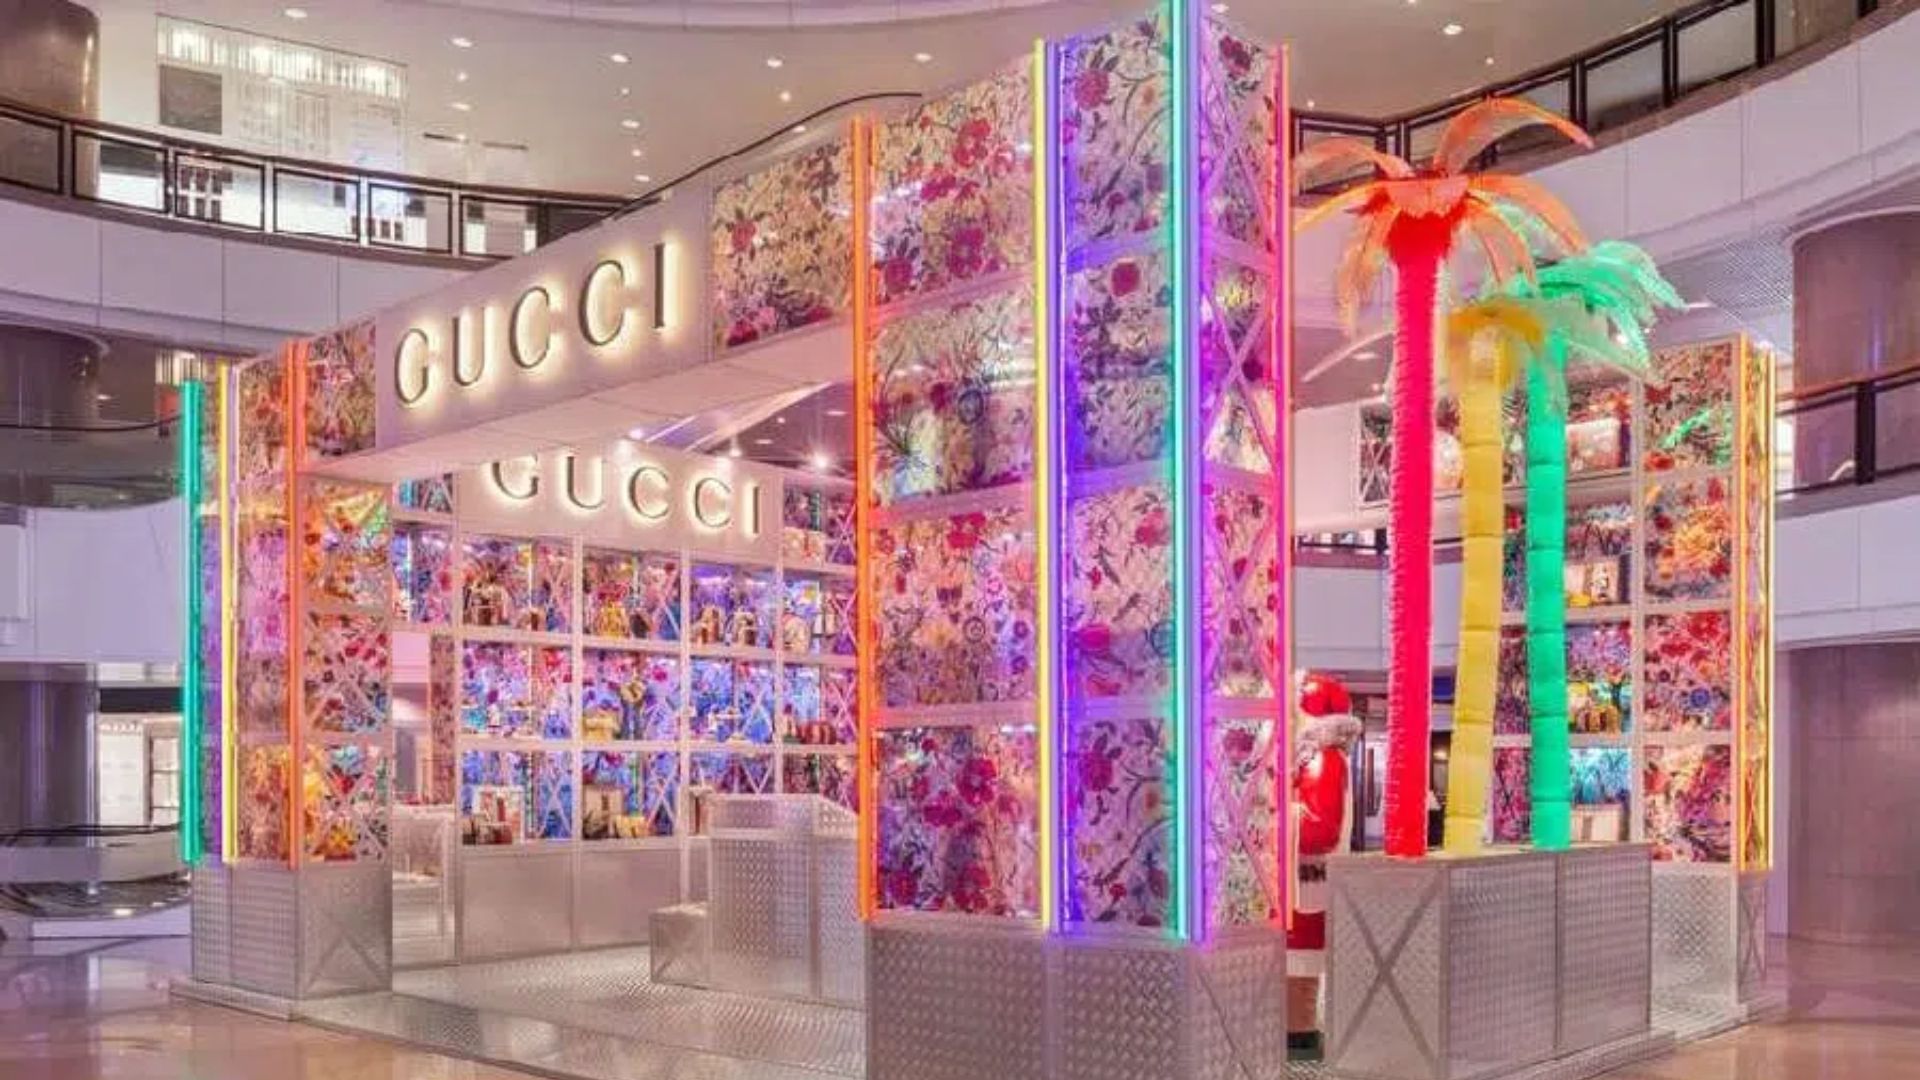 Gucci abre nuevas tiendas efímeras y temáticas llamadas “Pin”